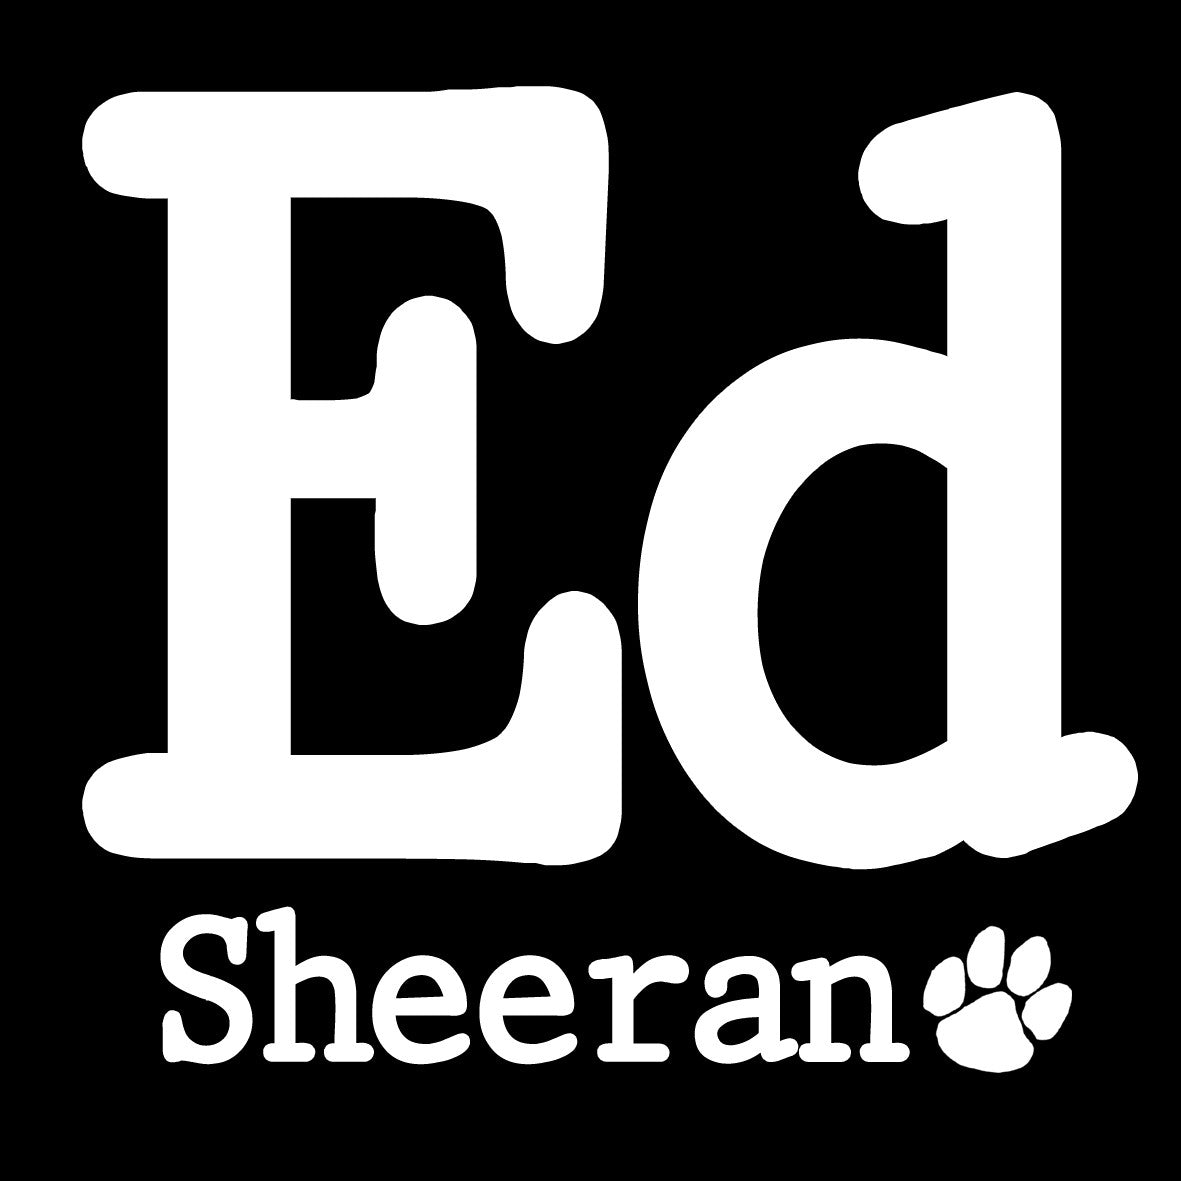 Ed Sheeran Central T Shirts